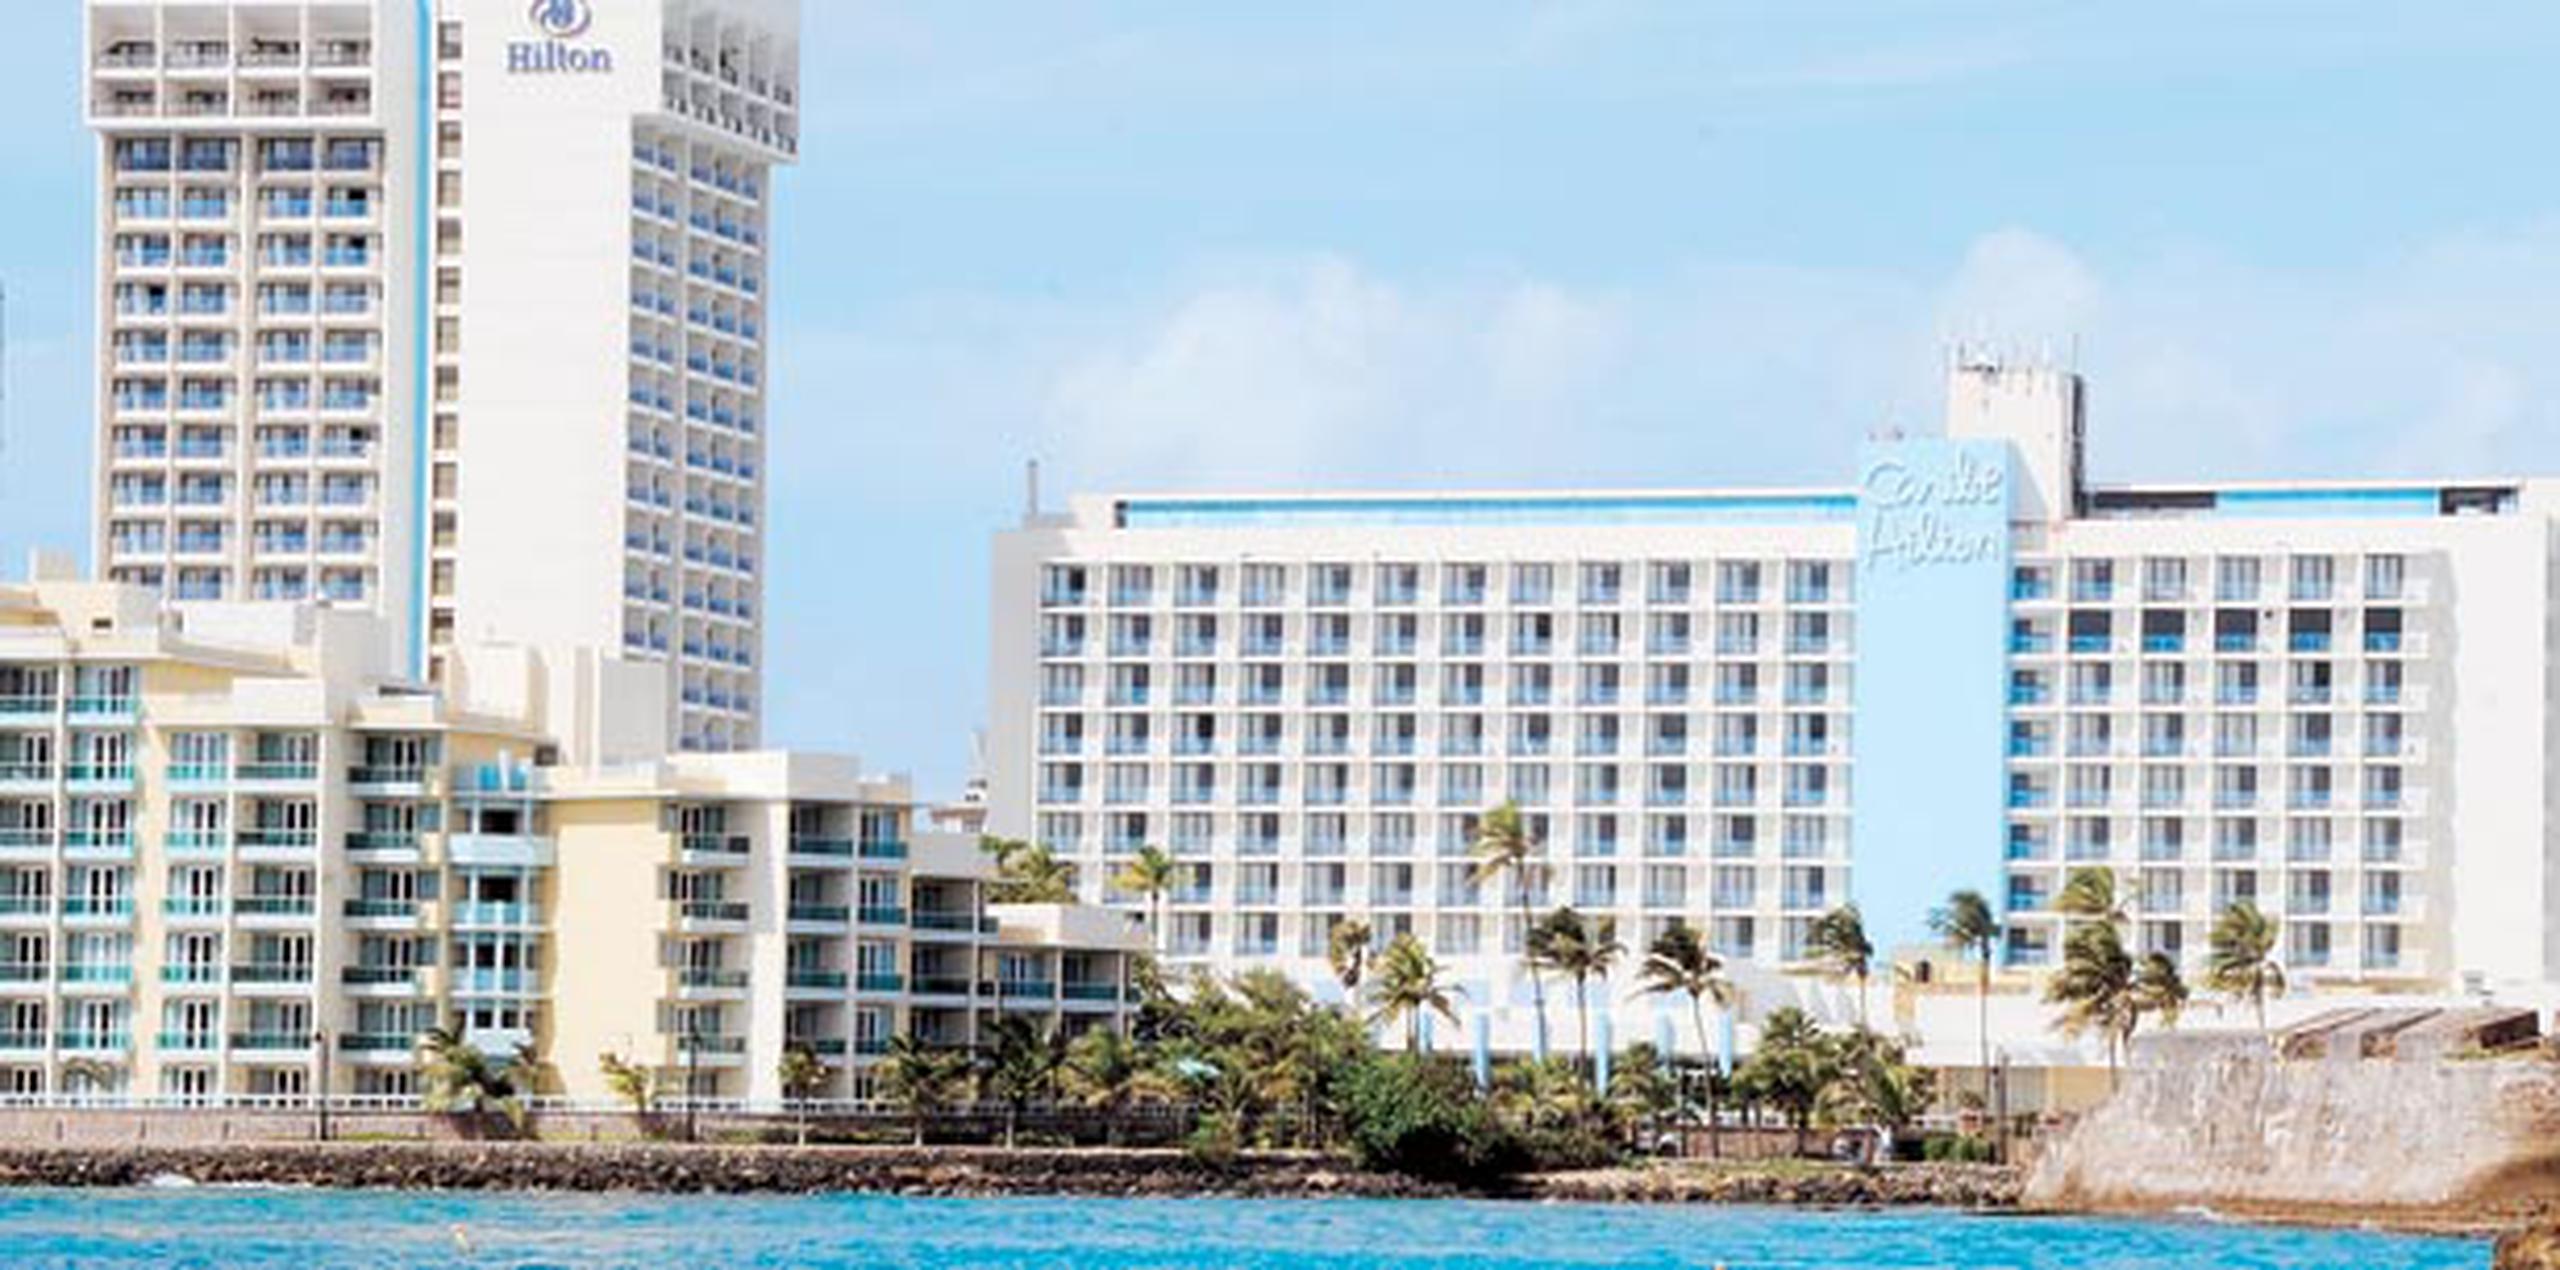 La gerencia del Hotel Caribe Hilton reaccionó escuetamente en un comunicado de prensa destacando la importancia de la seguridad de sus huéspedes y empleados.  (Archivo)